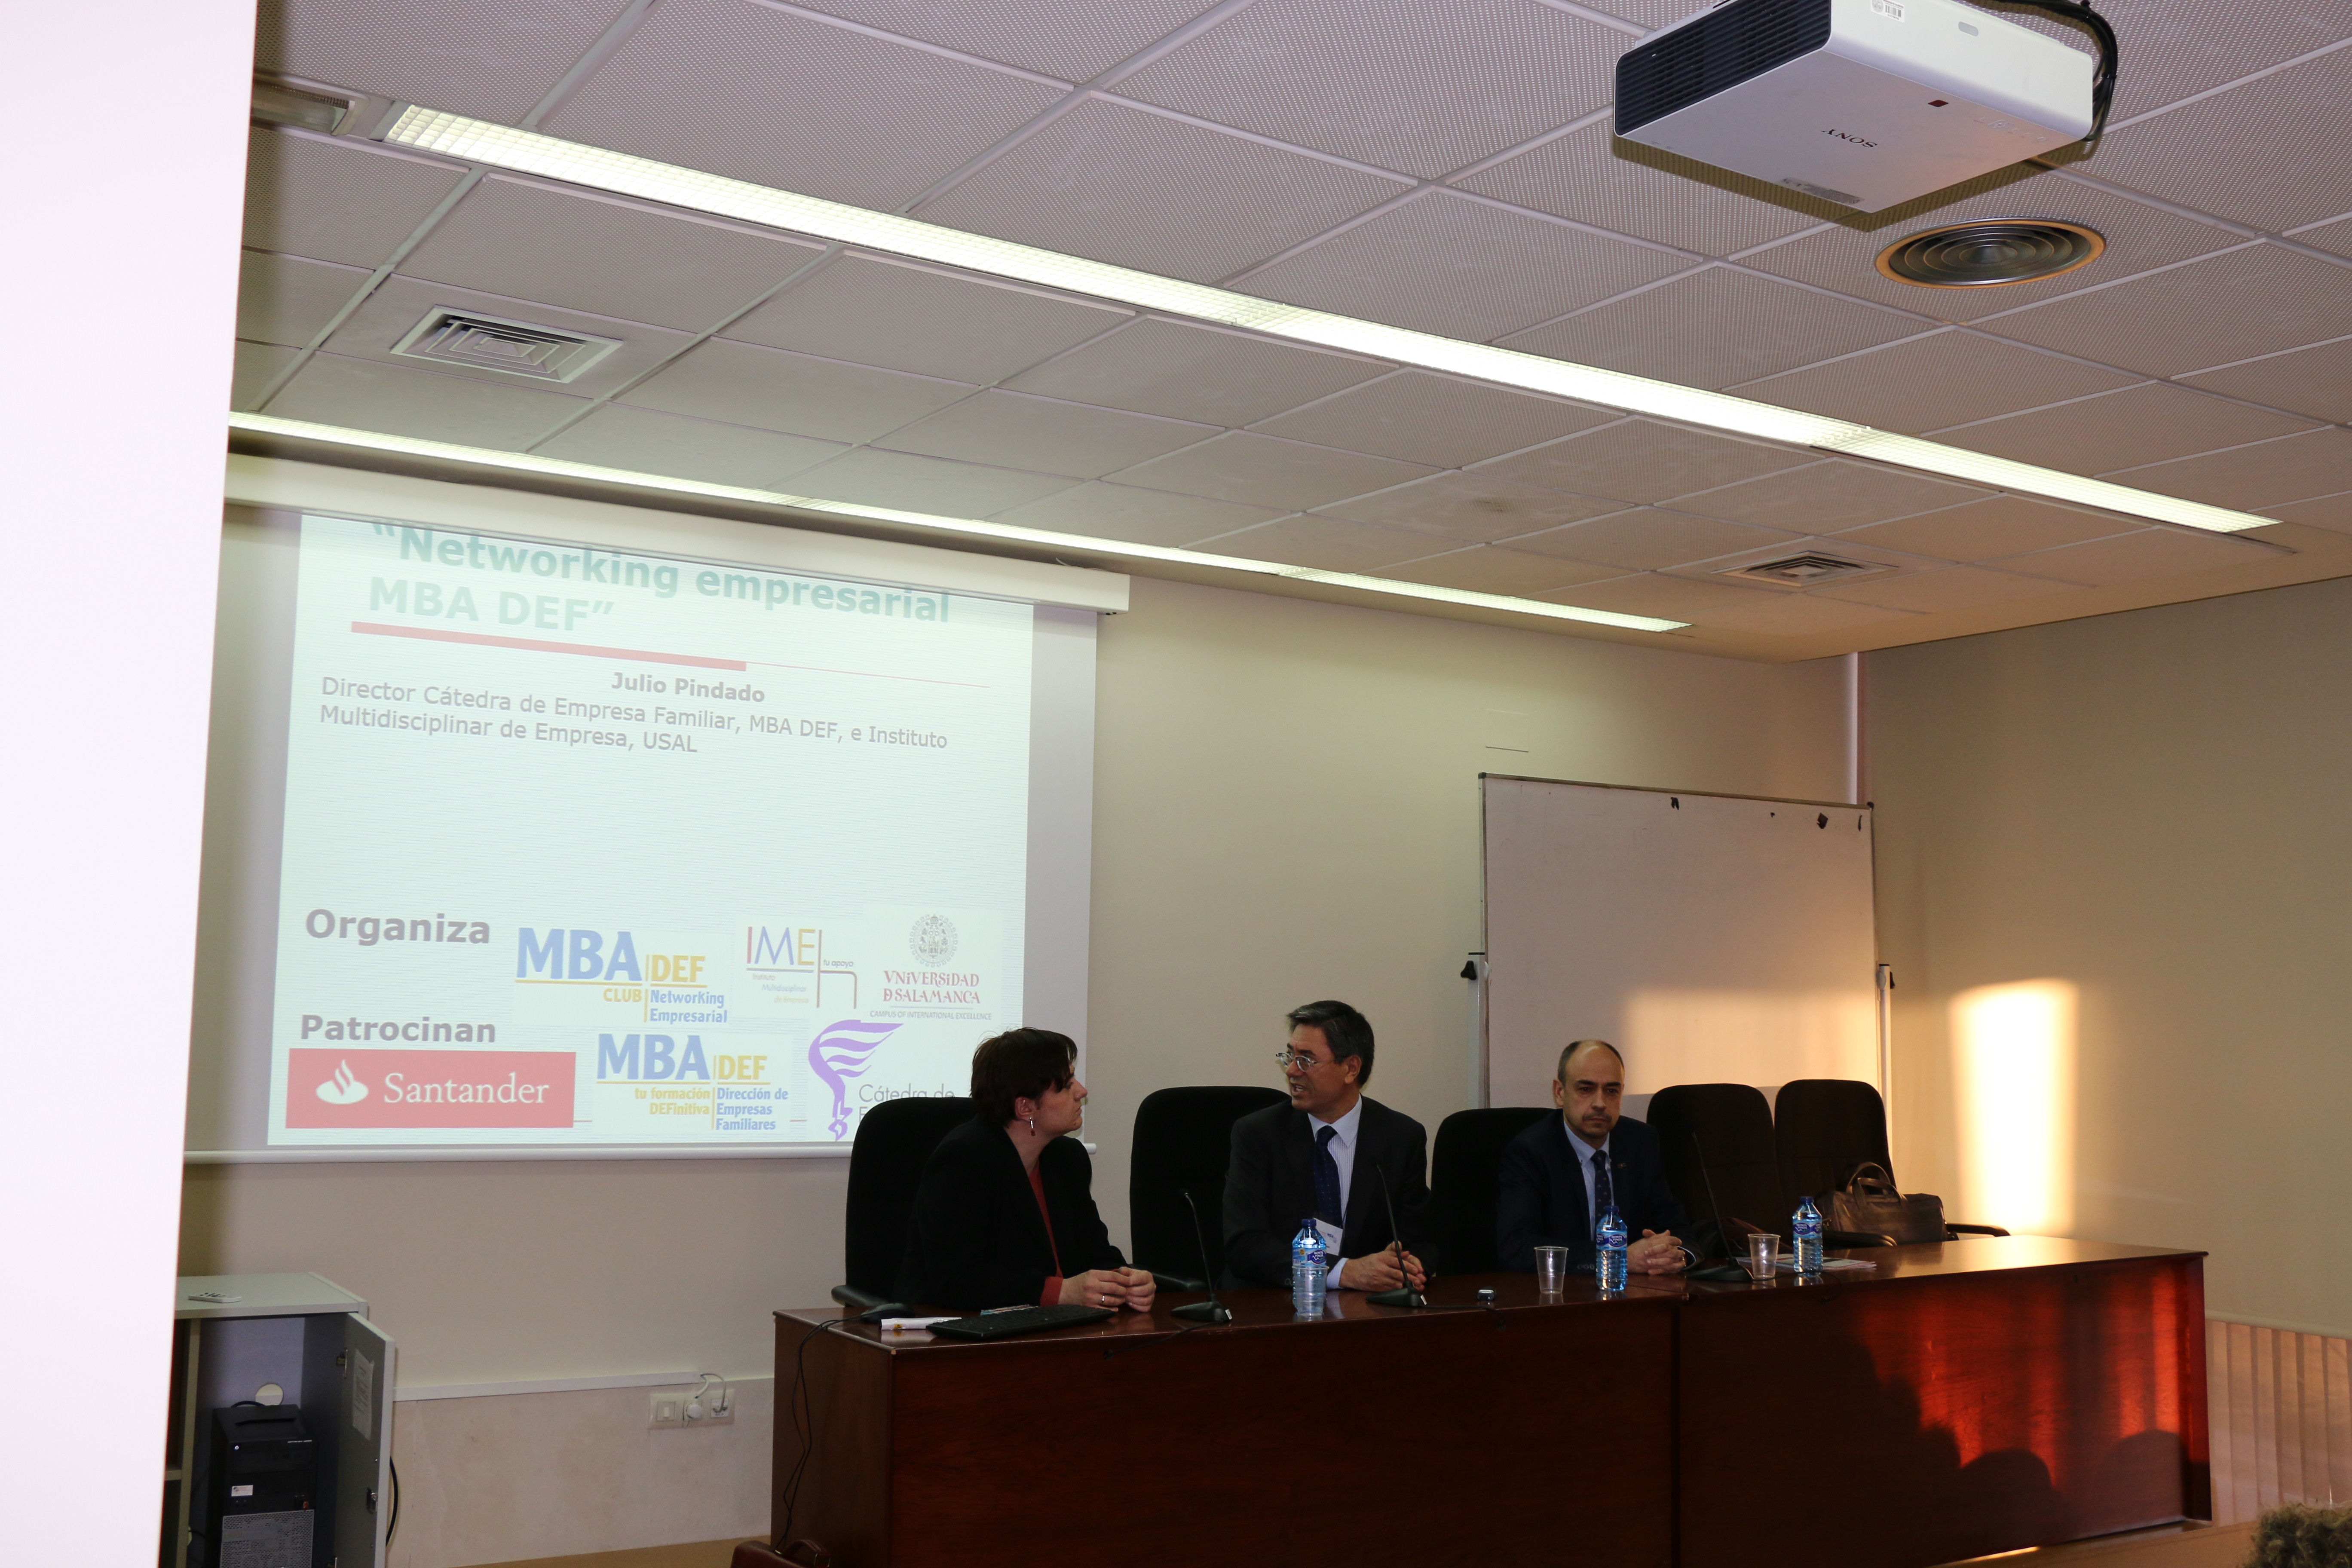 El Networking Empresarial MBA DEF de la Universidad de Salamanca presenta su quinta edición